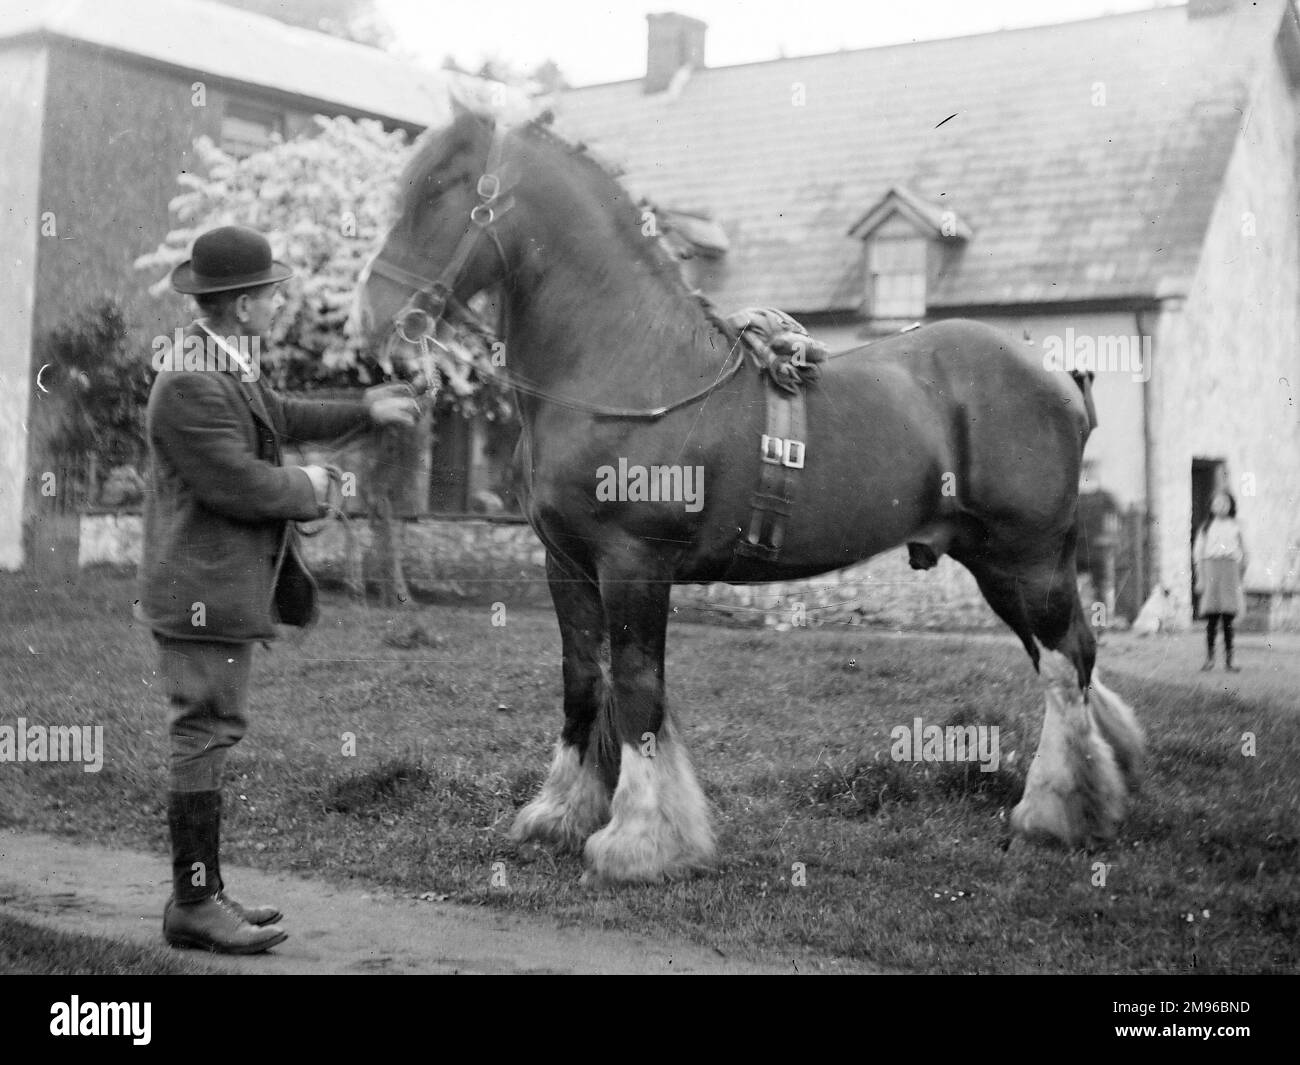 Un Signore che tiene le redini di un cavallo shire di fronte a una casa, probabilmente da qualche parte nel Galles centrale. Una bambina guarda da lontano. Foto Stock